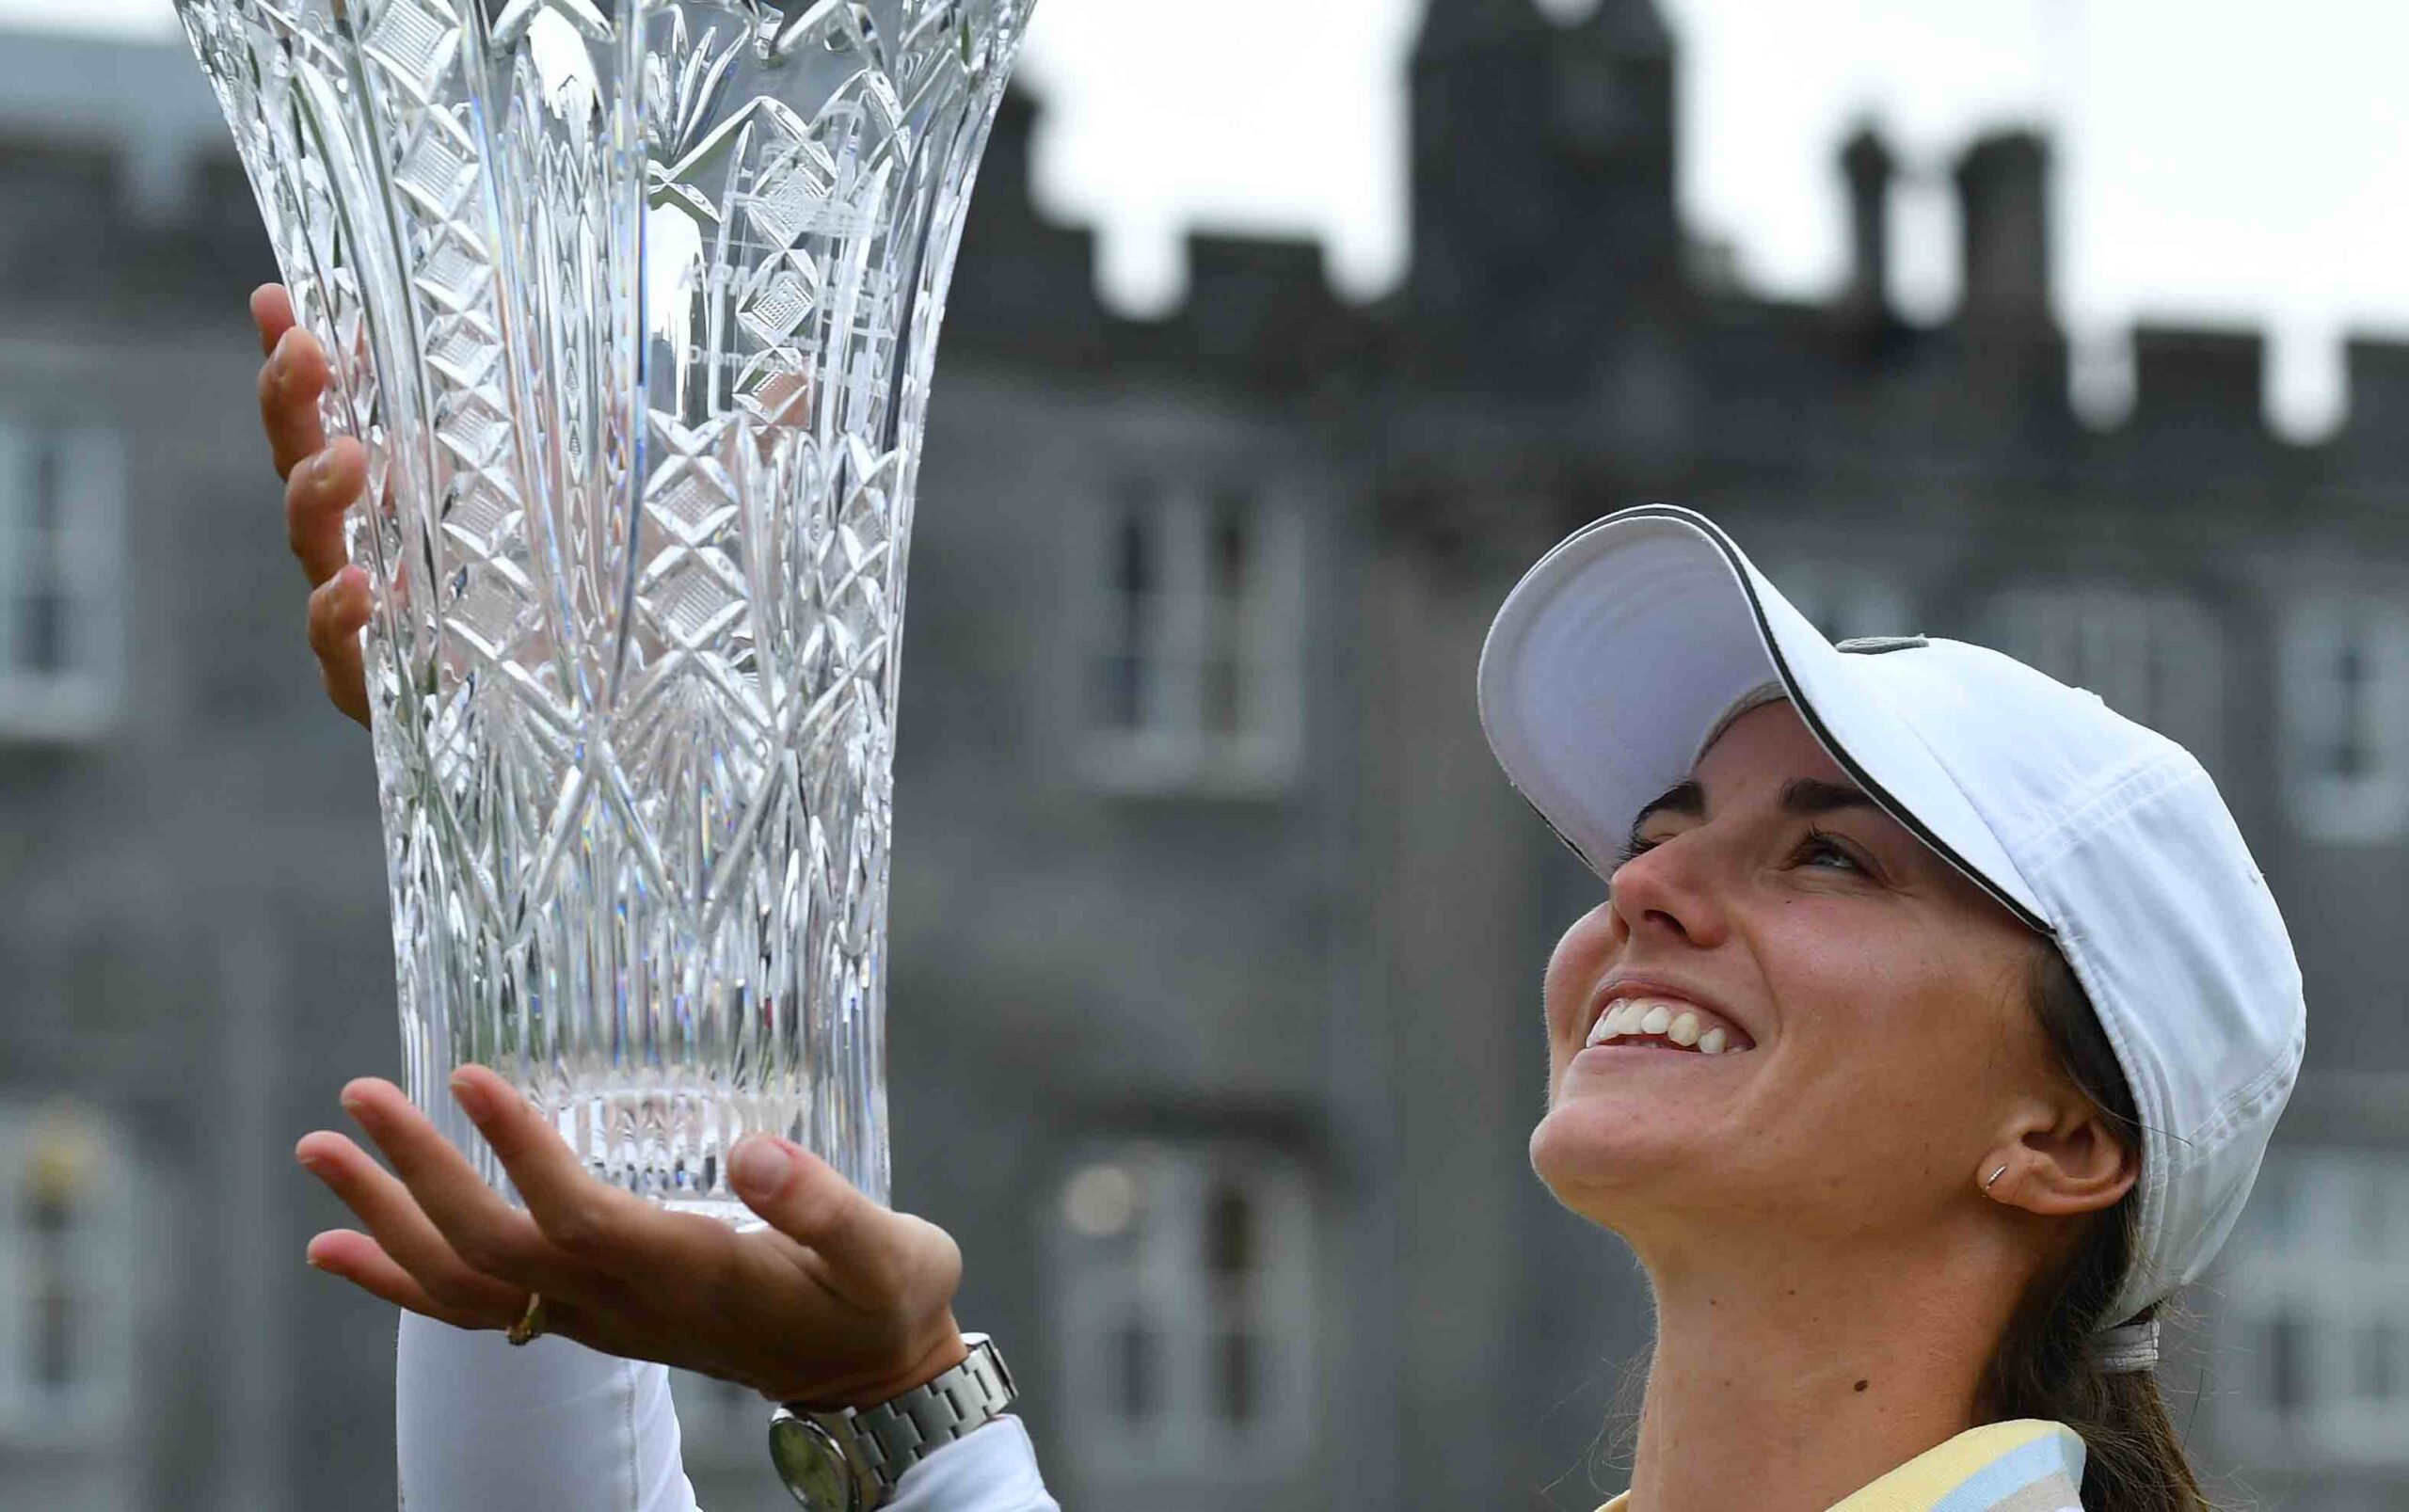 Klara Spilkova wins in Ireland